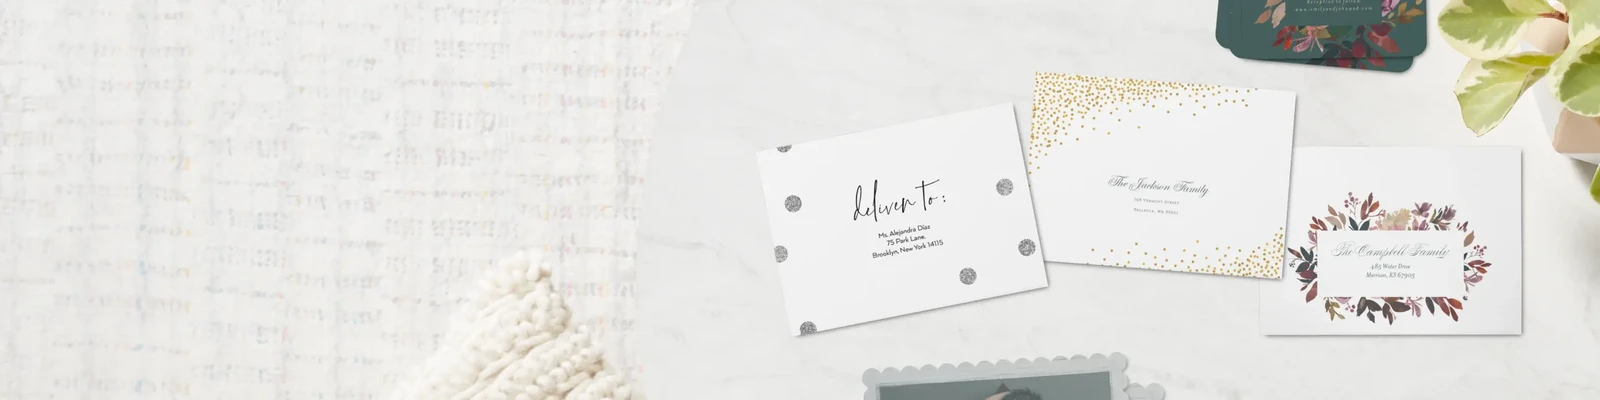 Wrap Around Wedding Address Labels, Envelope Addressing, RSVP Return  Address Label, Fold Over Address Stickers - Set of 20